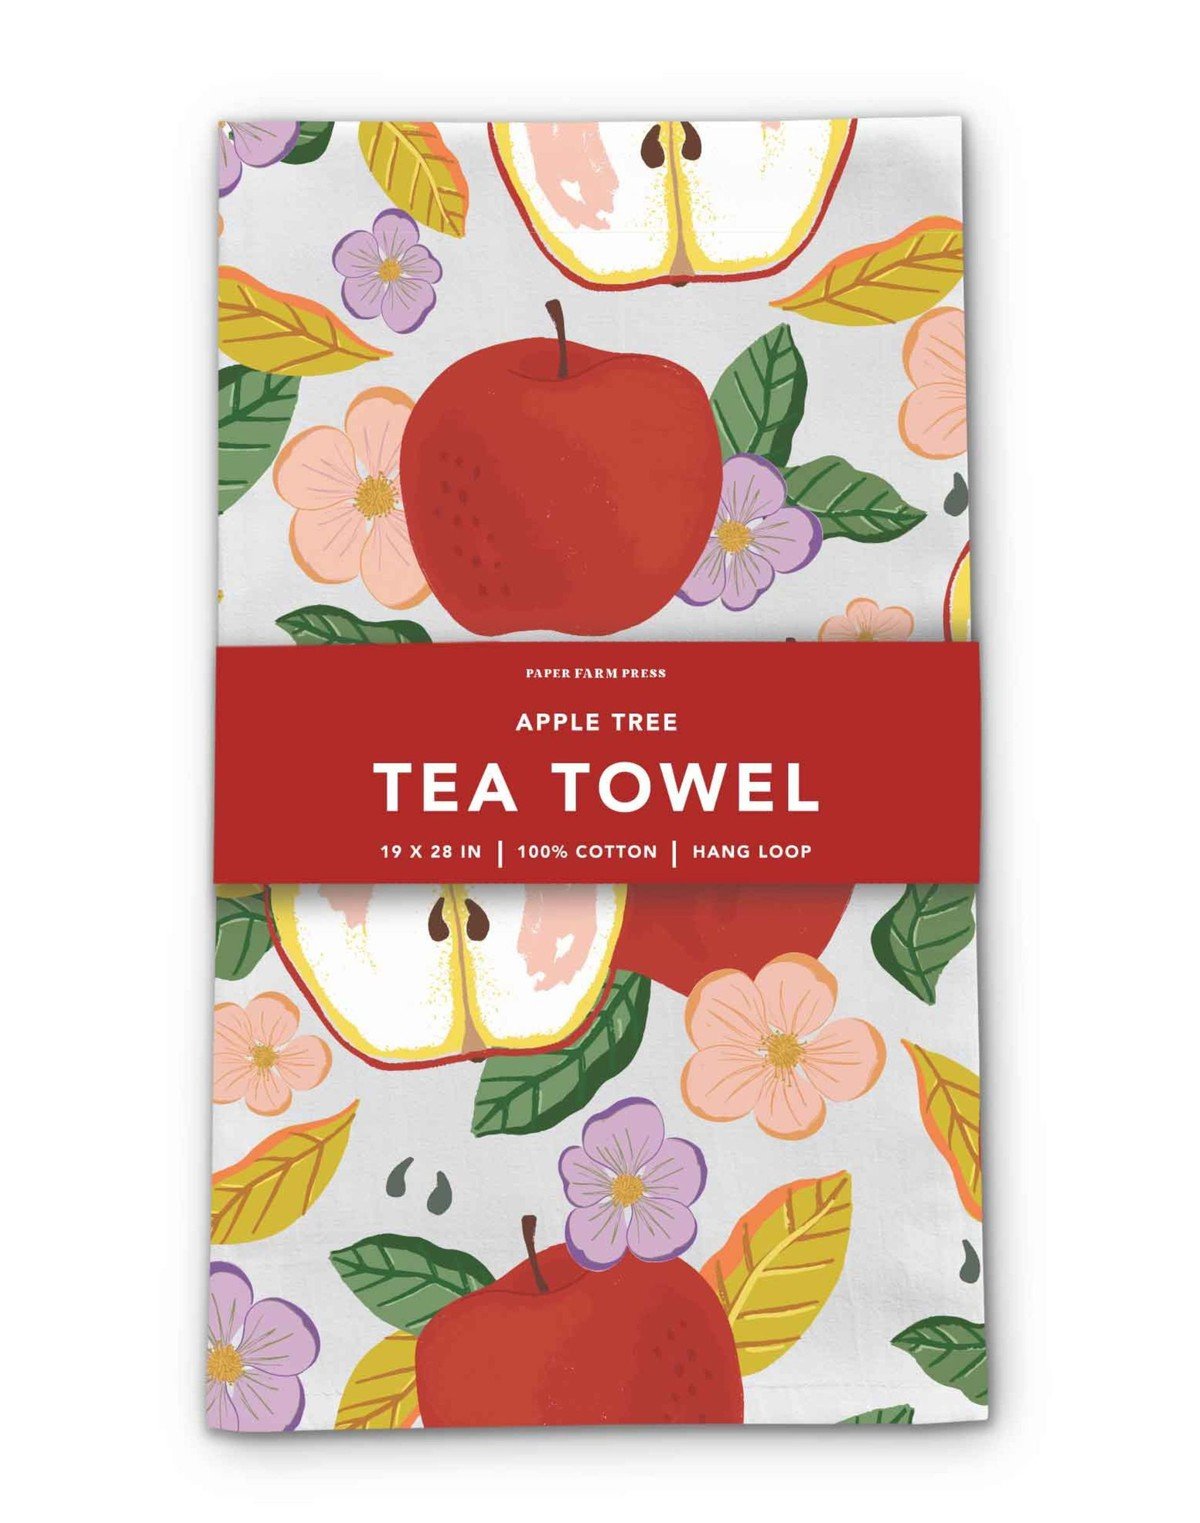 Apple Tree Tea Towel item